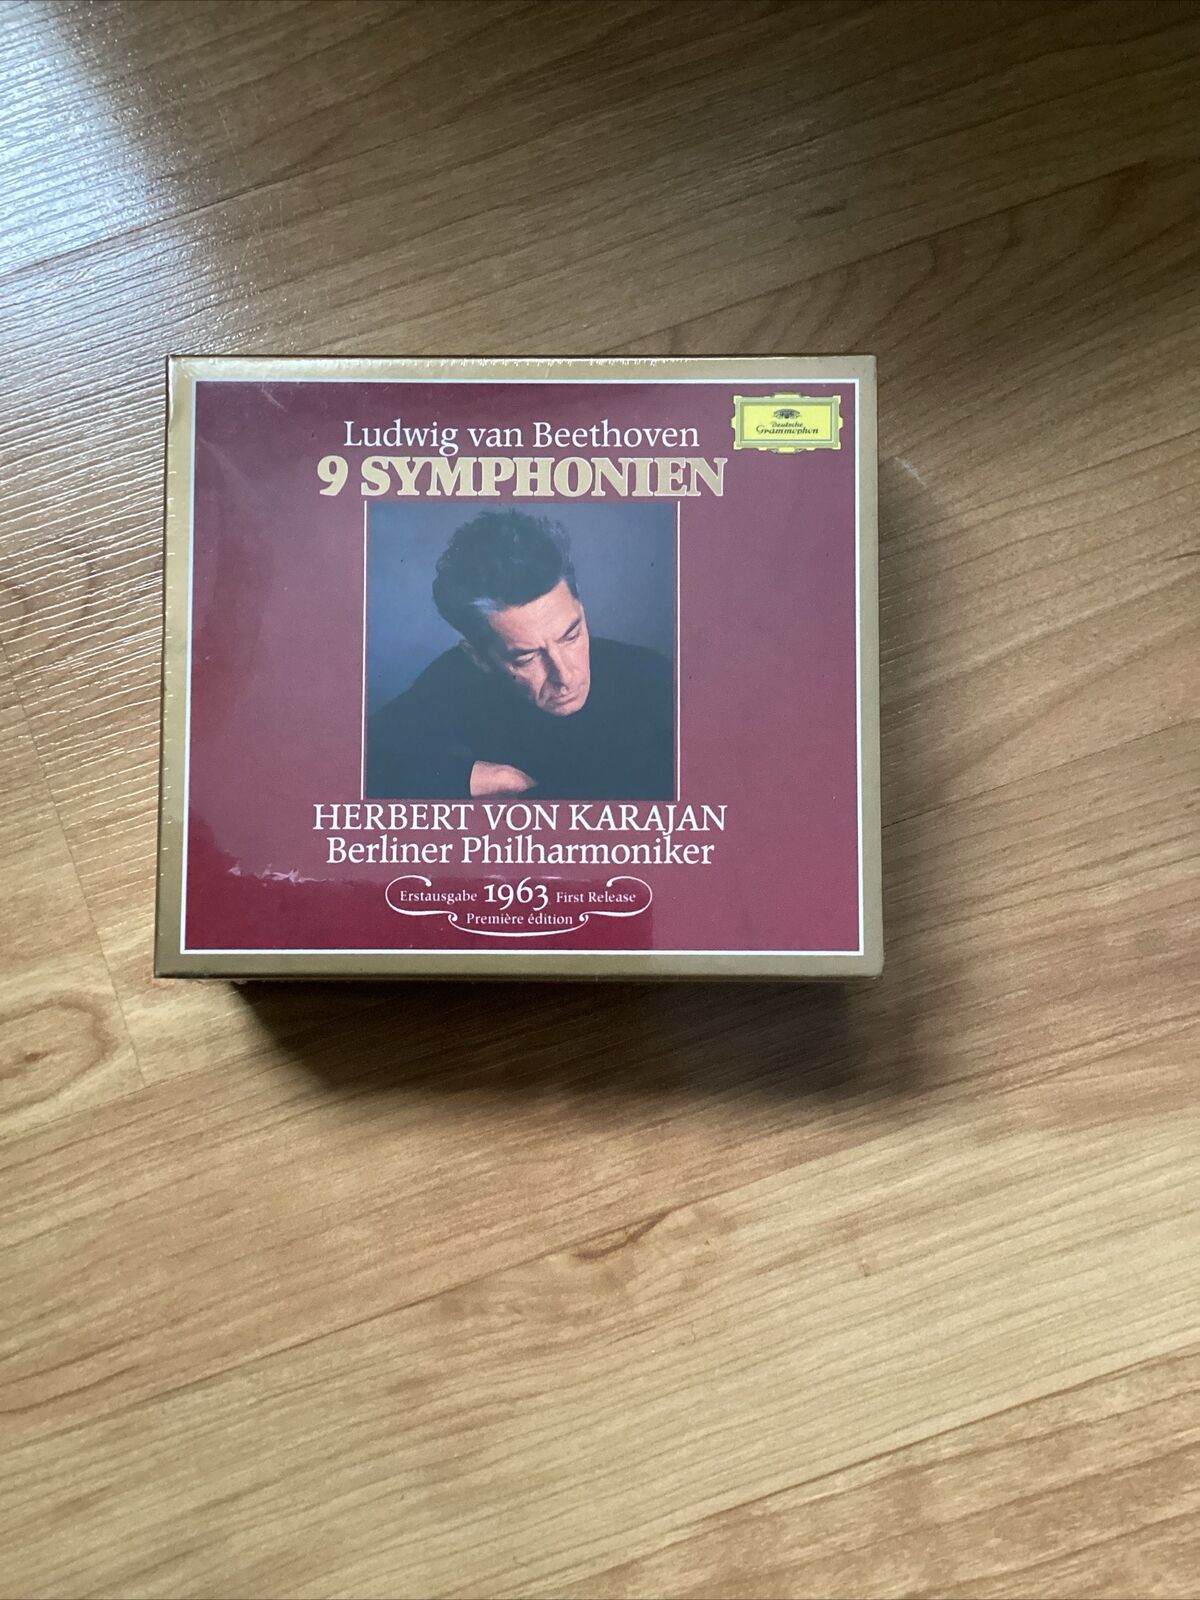 Symphonies 1-9 by Beethoven / Karajan / Bpo (CD, 1990) New Sealed